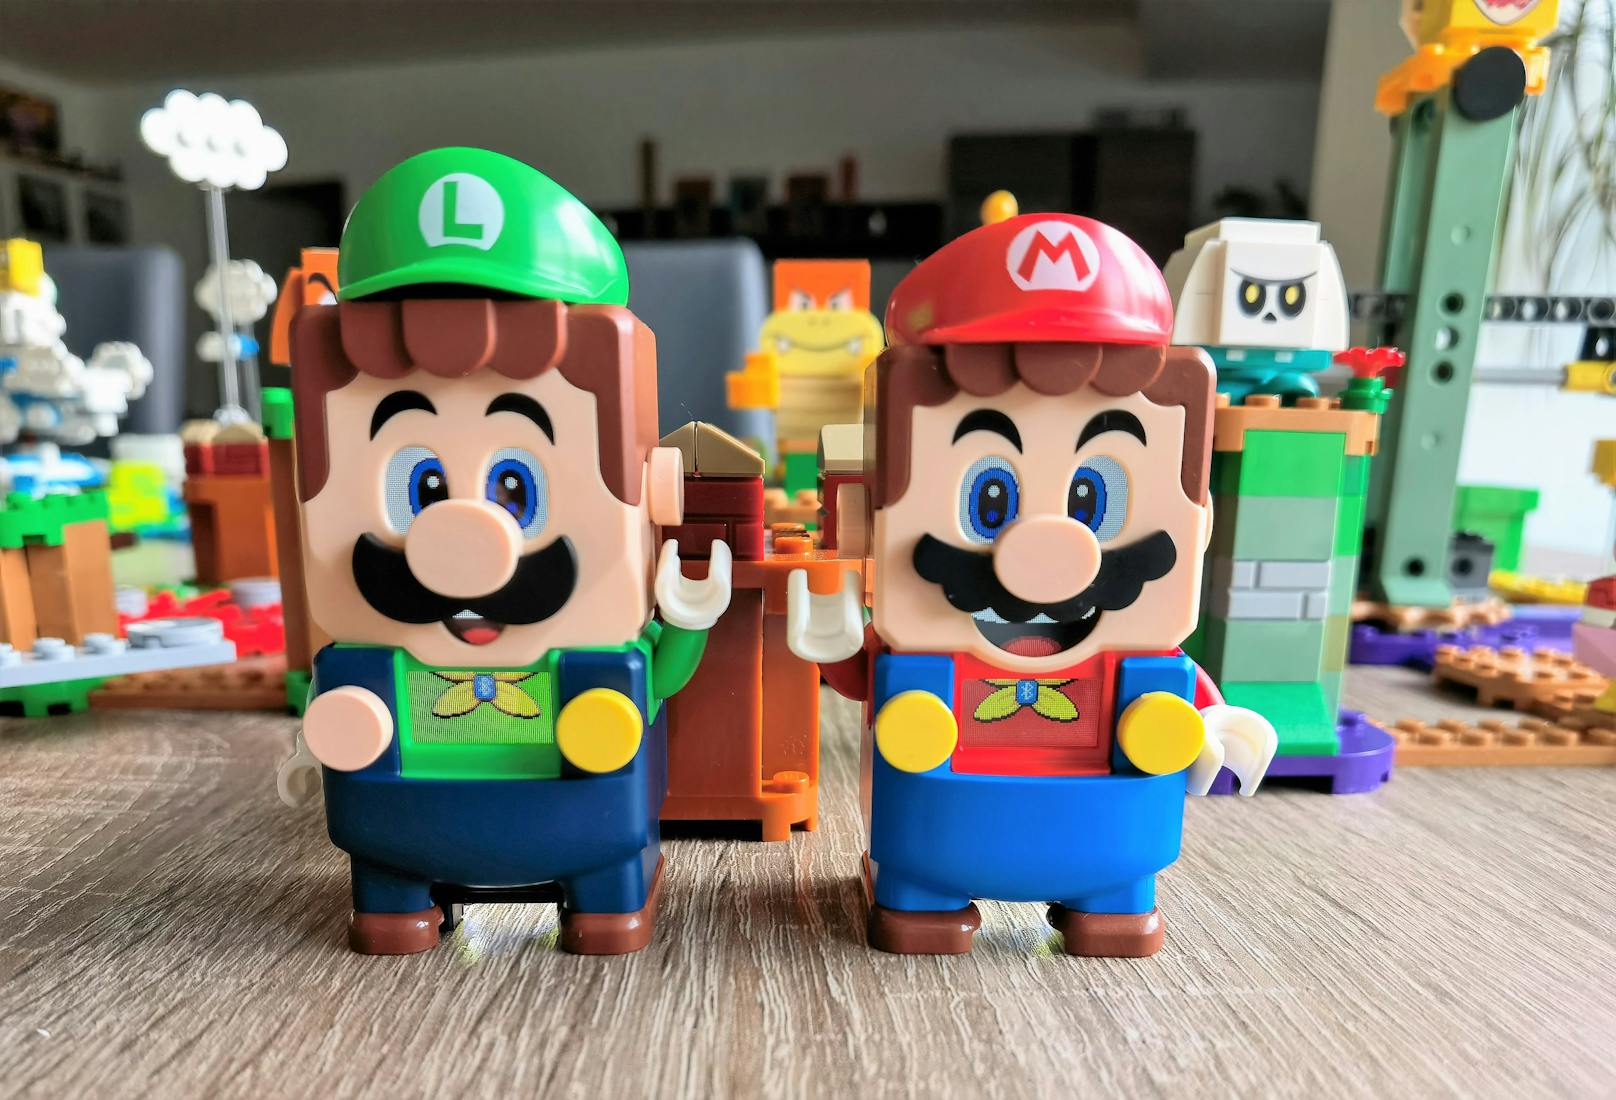 Der Clou des Startests beziehungsweise der neuen Figur ist aber wohl die Dual-Player-Version. Wer den 2-Spieler-Modus aus den Mario-Videospielen kennt, darf sich über diesen nun auch in der LEGO-Welt freuen.